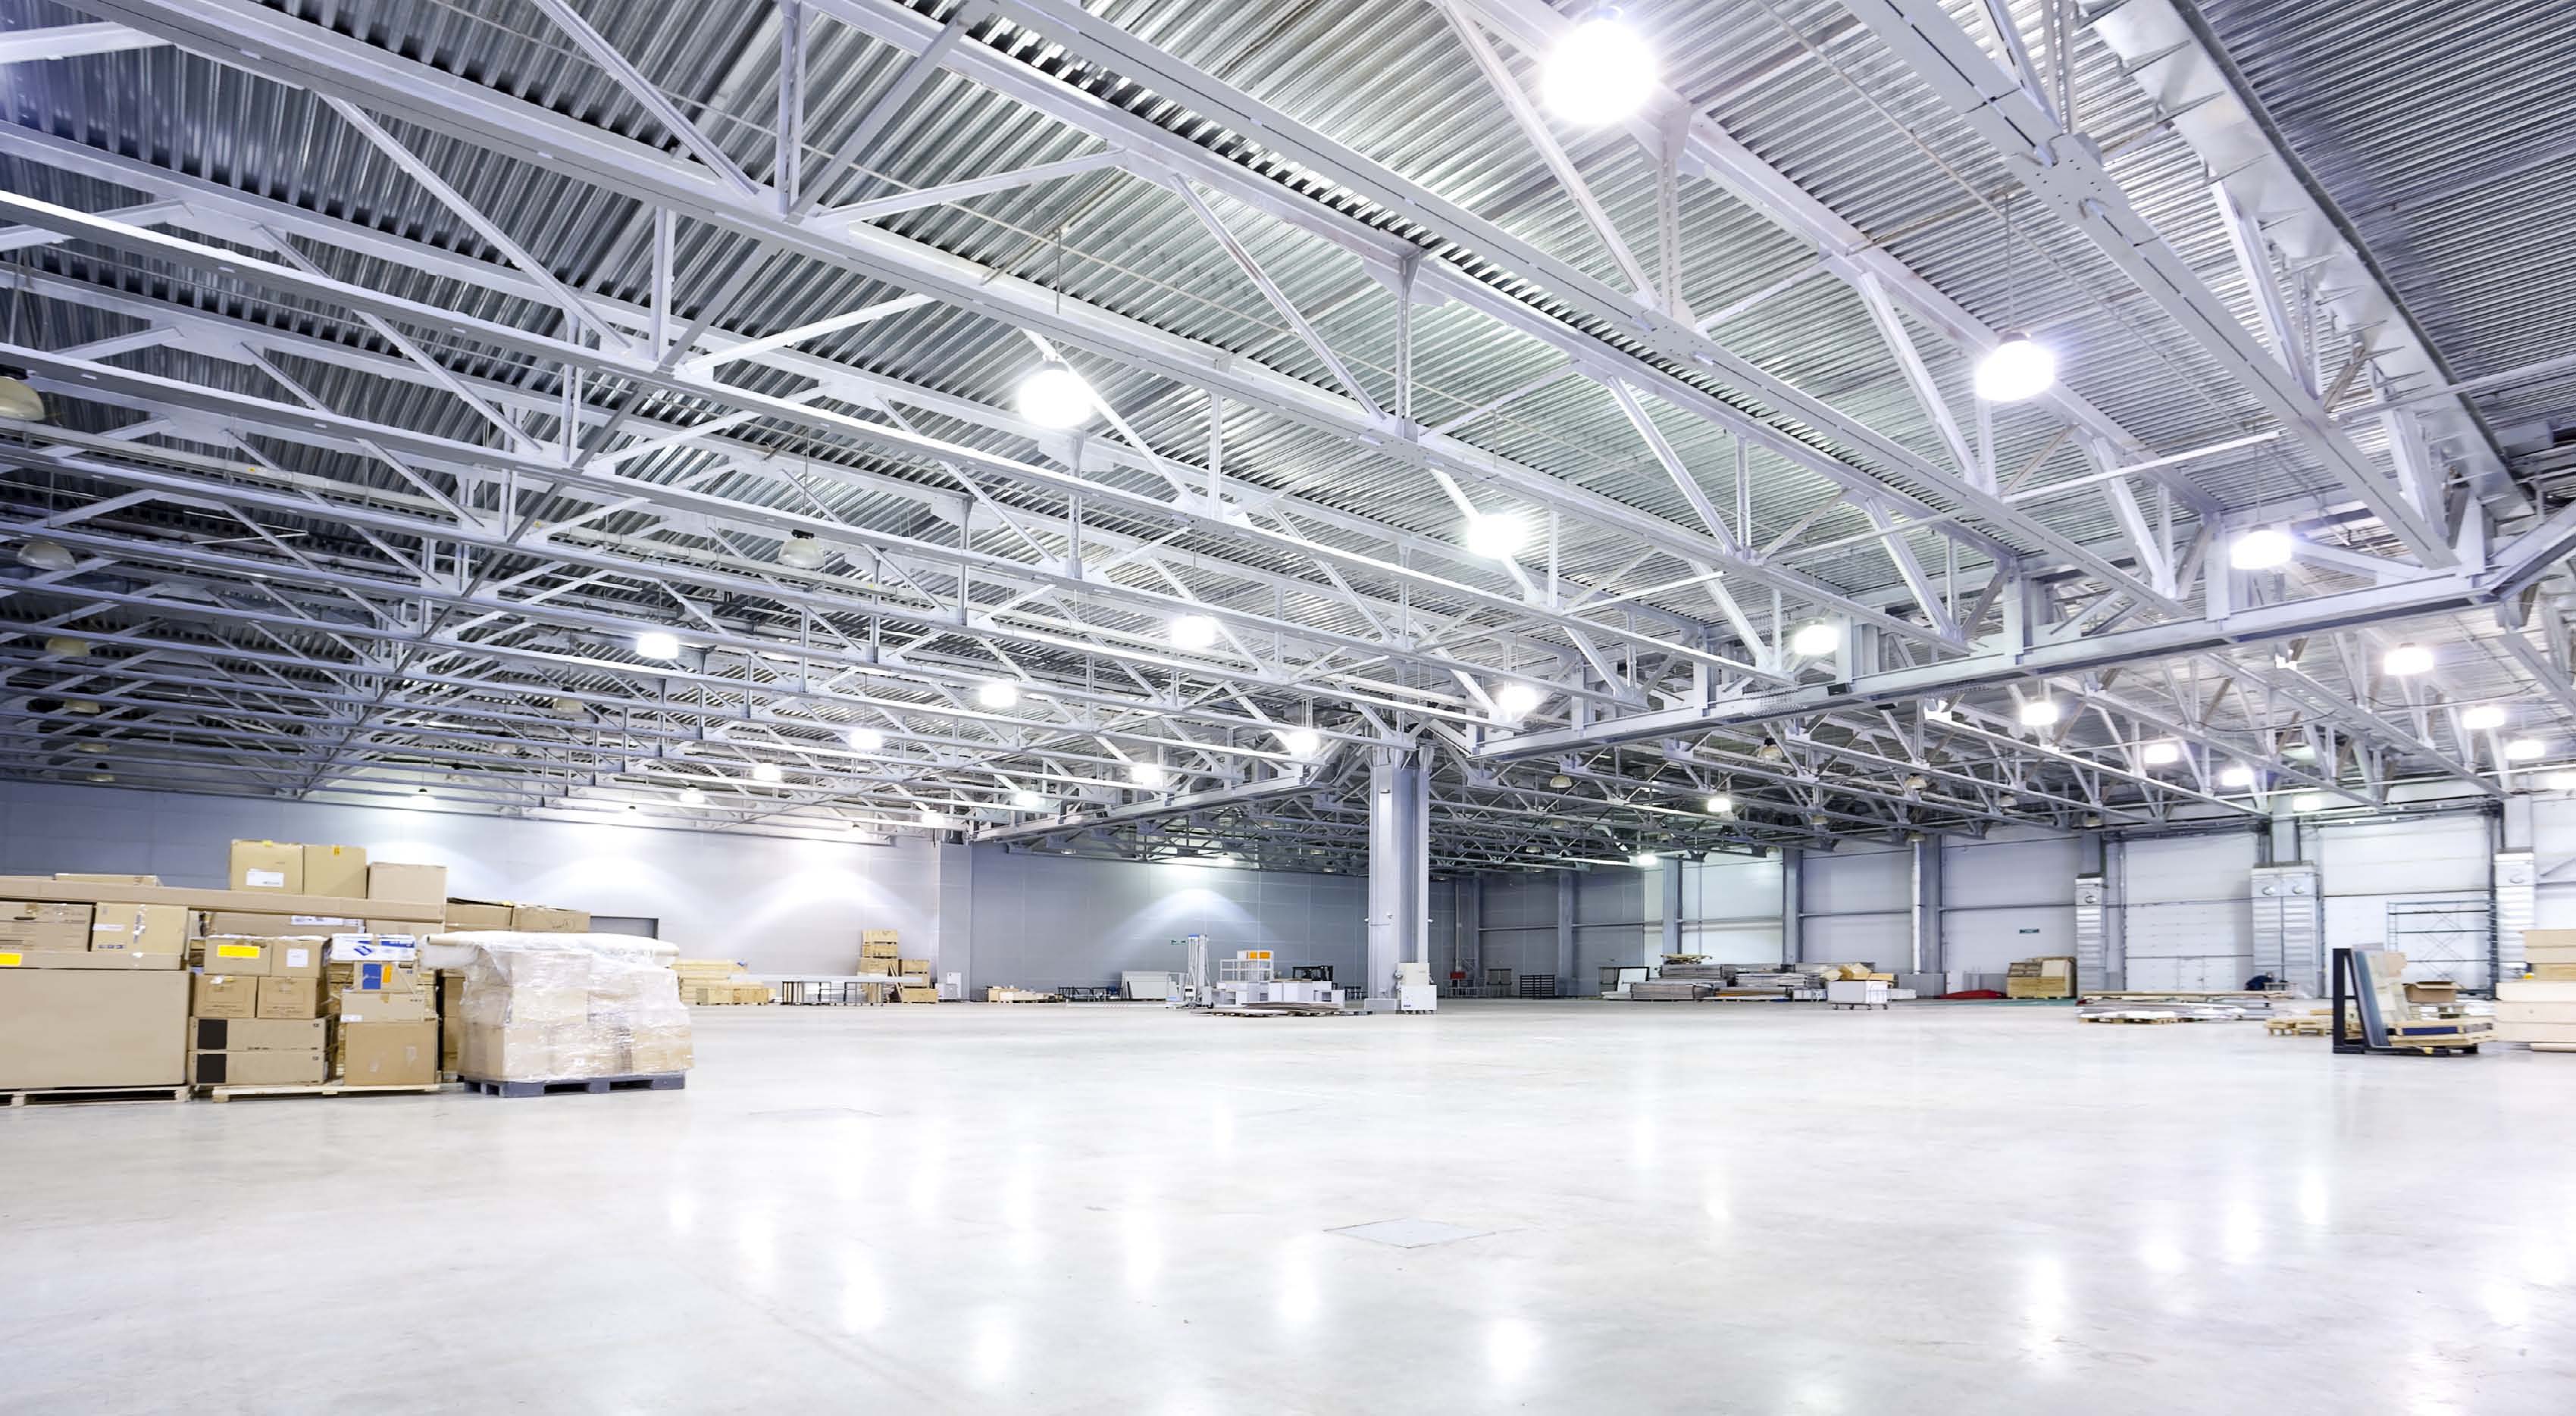 Đèn LED công nghiệp: Đèn LED công nghiệp là sự lựa chọn tối ưu cho mọi công trình chiếu sáng nhà xưởng. Nó tiết kiệm năng lượng và có tuổi thọ cao hơn, giúp tiết kiệm chi phí và bảo vệ môi trường. Với những hình ảnh liên quan đến đèn LED công nghiệp, bạn sẽ tìm hiểu thêm về những ứng dụng của nó và tình trạng phát triển mới nhất.